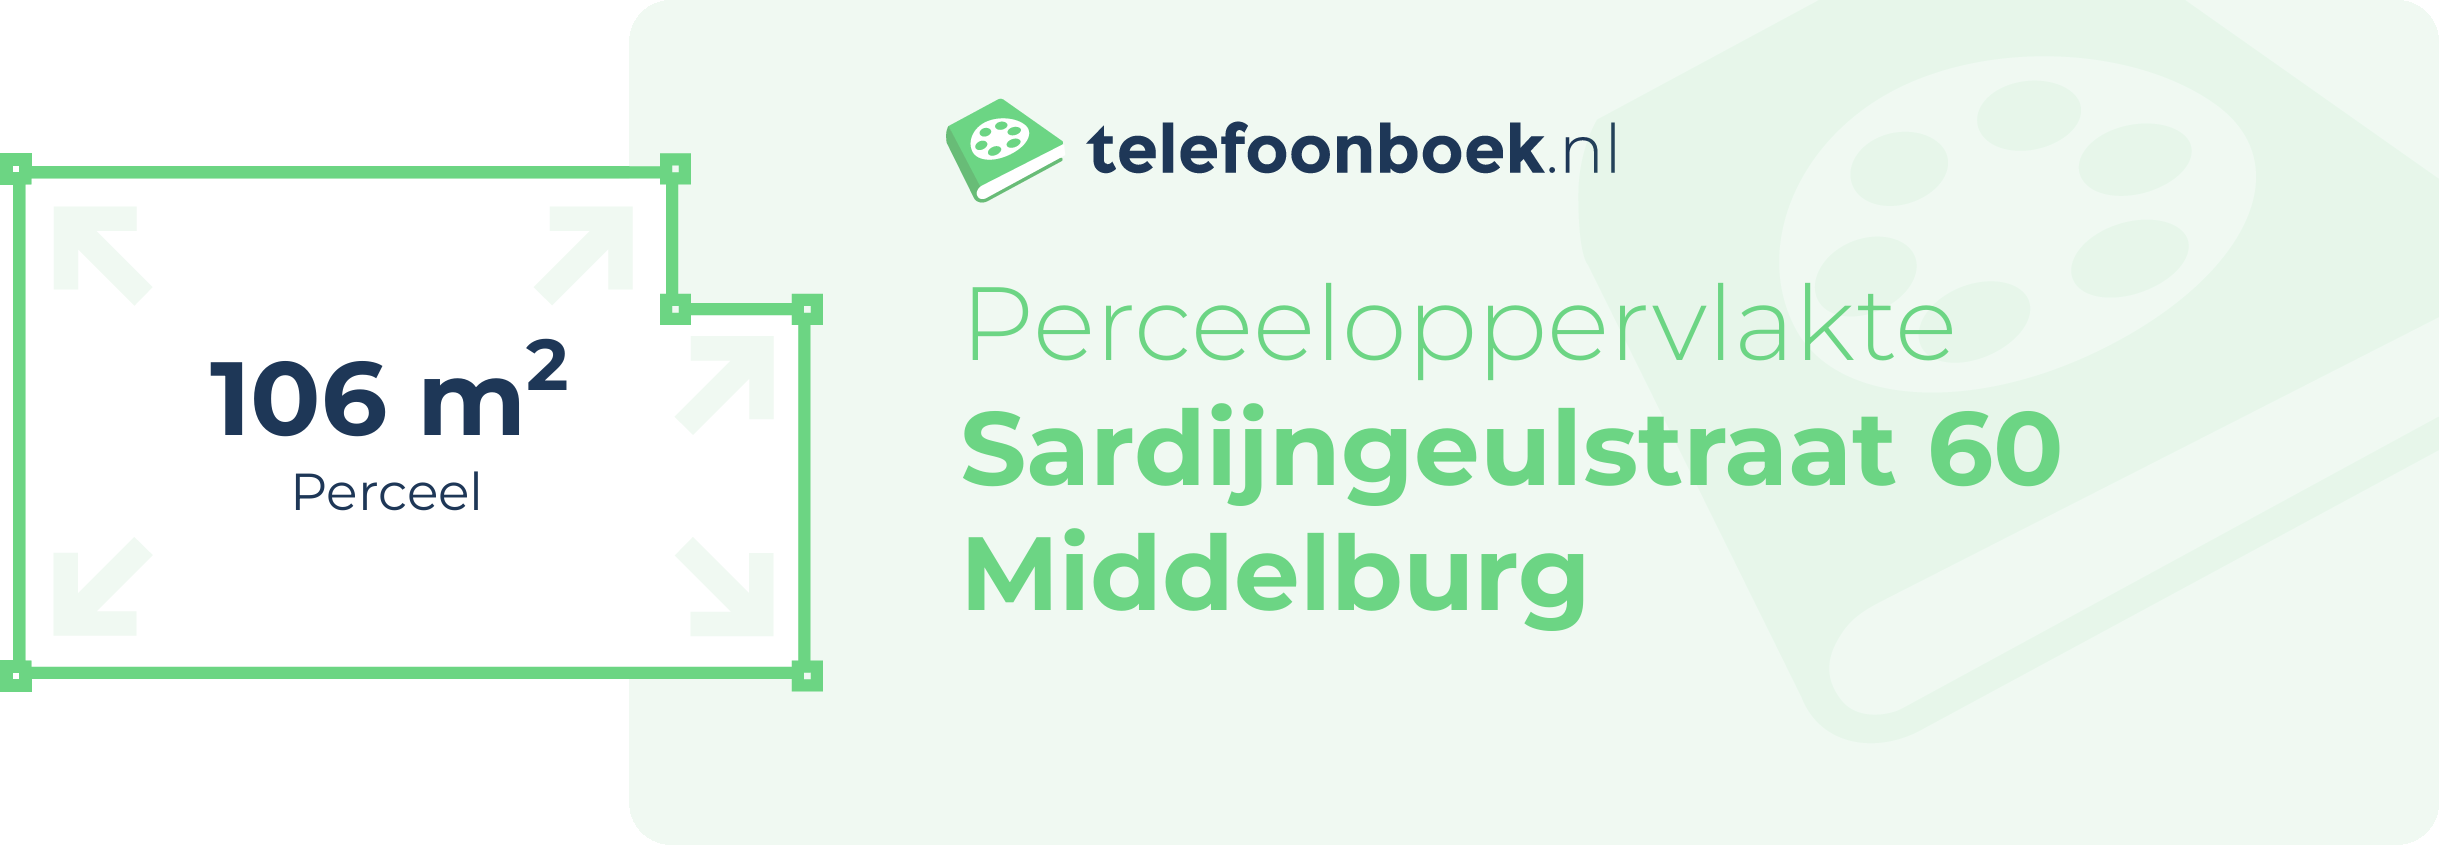 Perceeloppervlakte Sardijngeulstraat 60 Middelburg